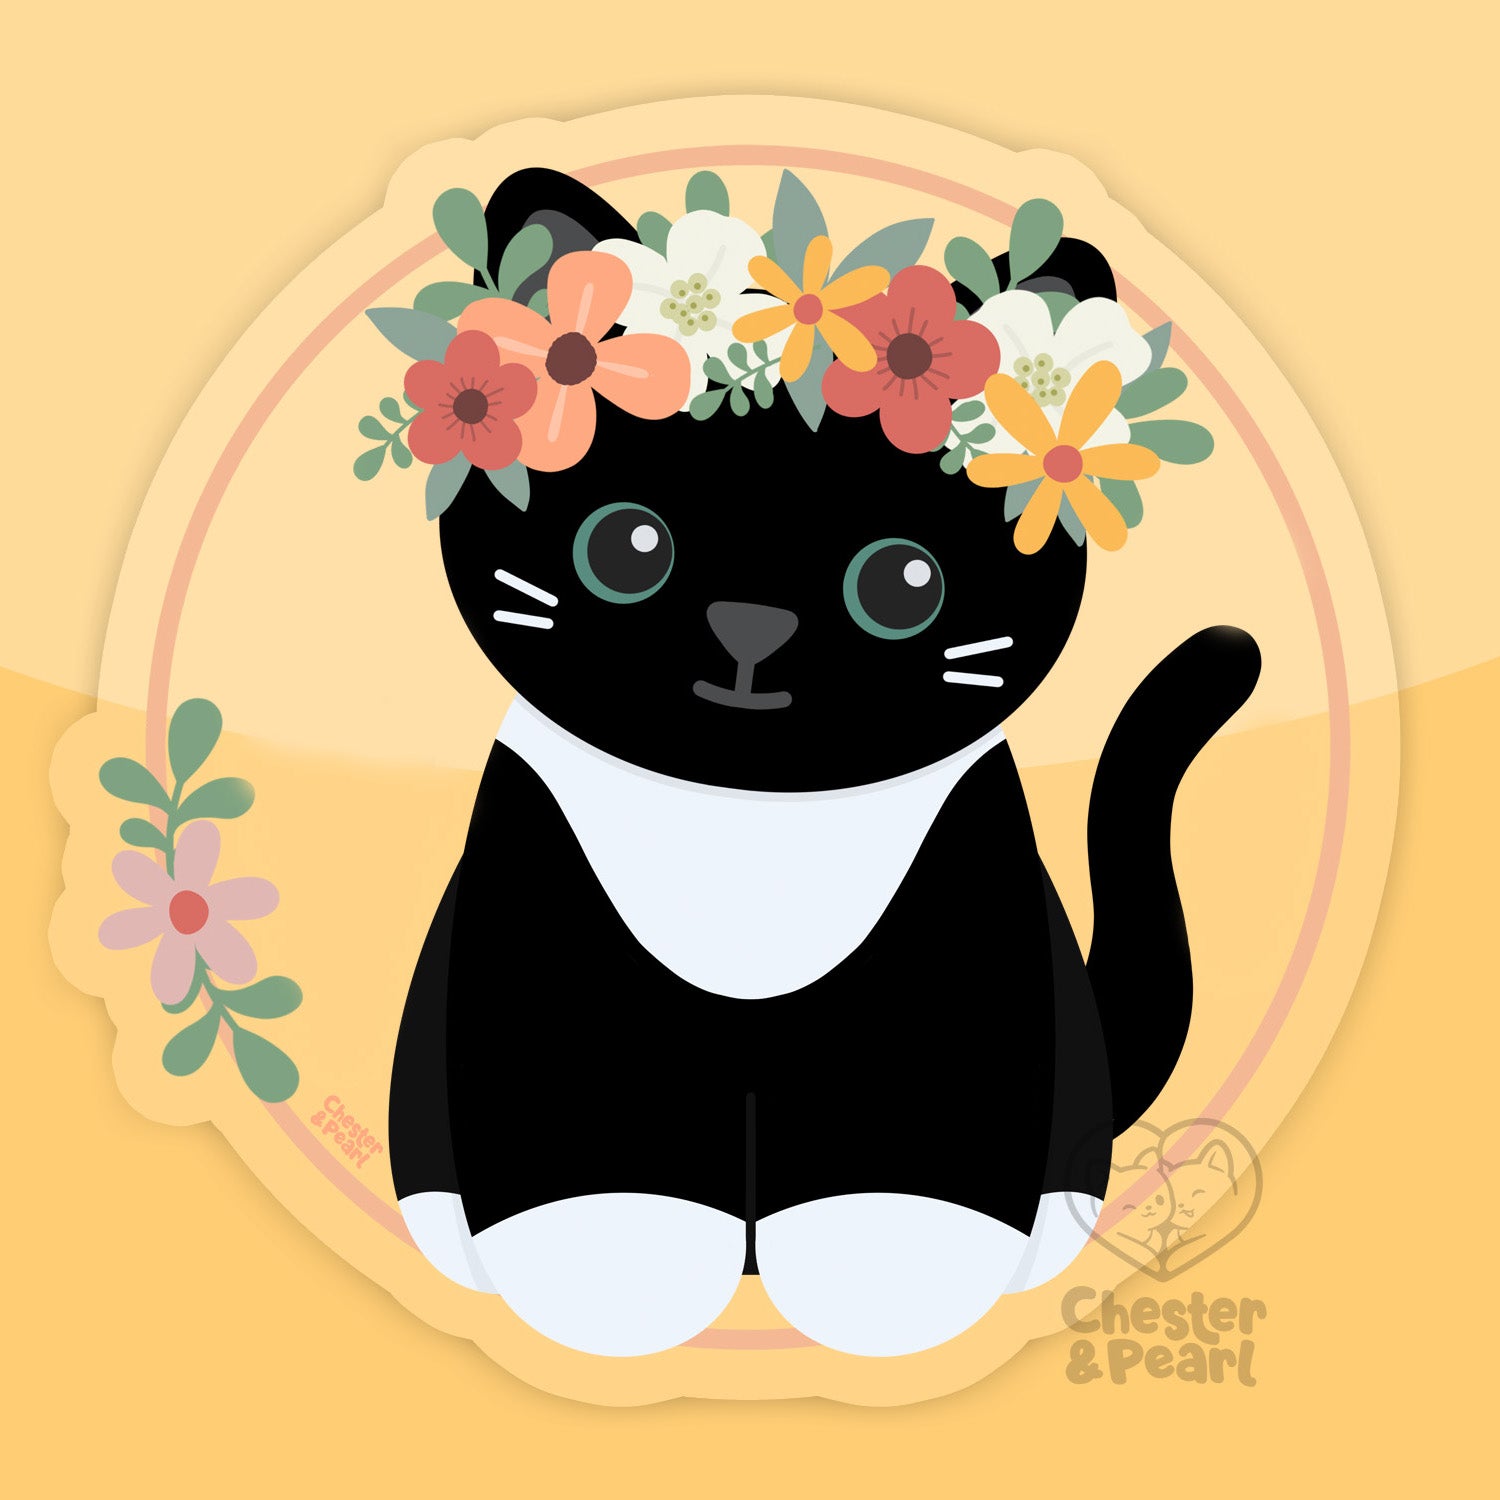 Black Tuxedo Flower Crown Cat 3-in. Clear Vinyl Sticker